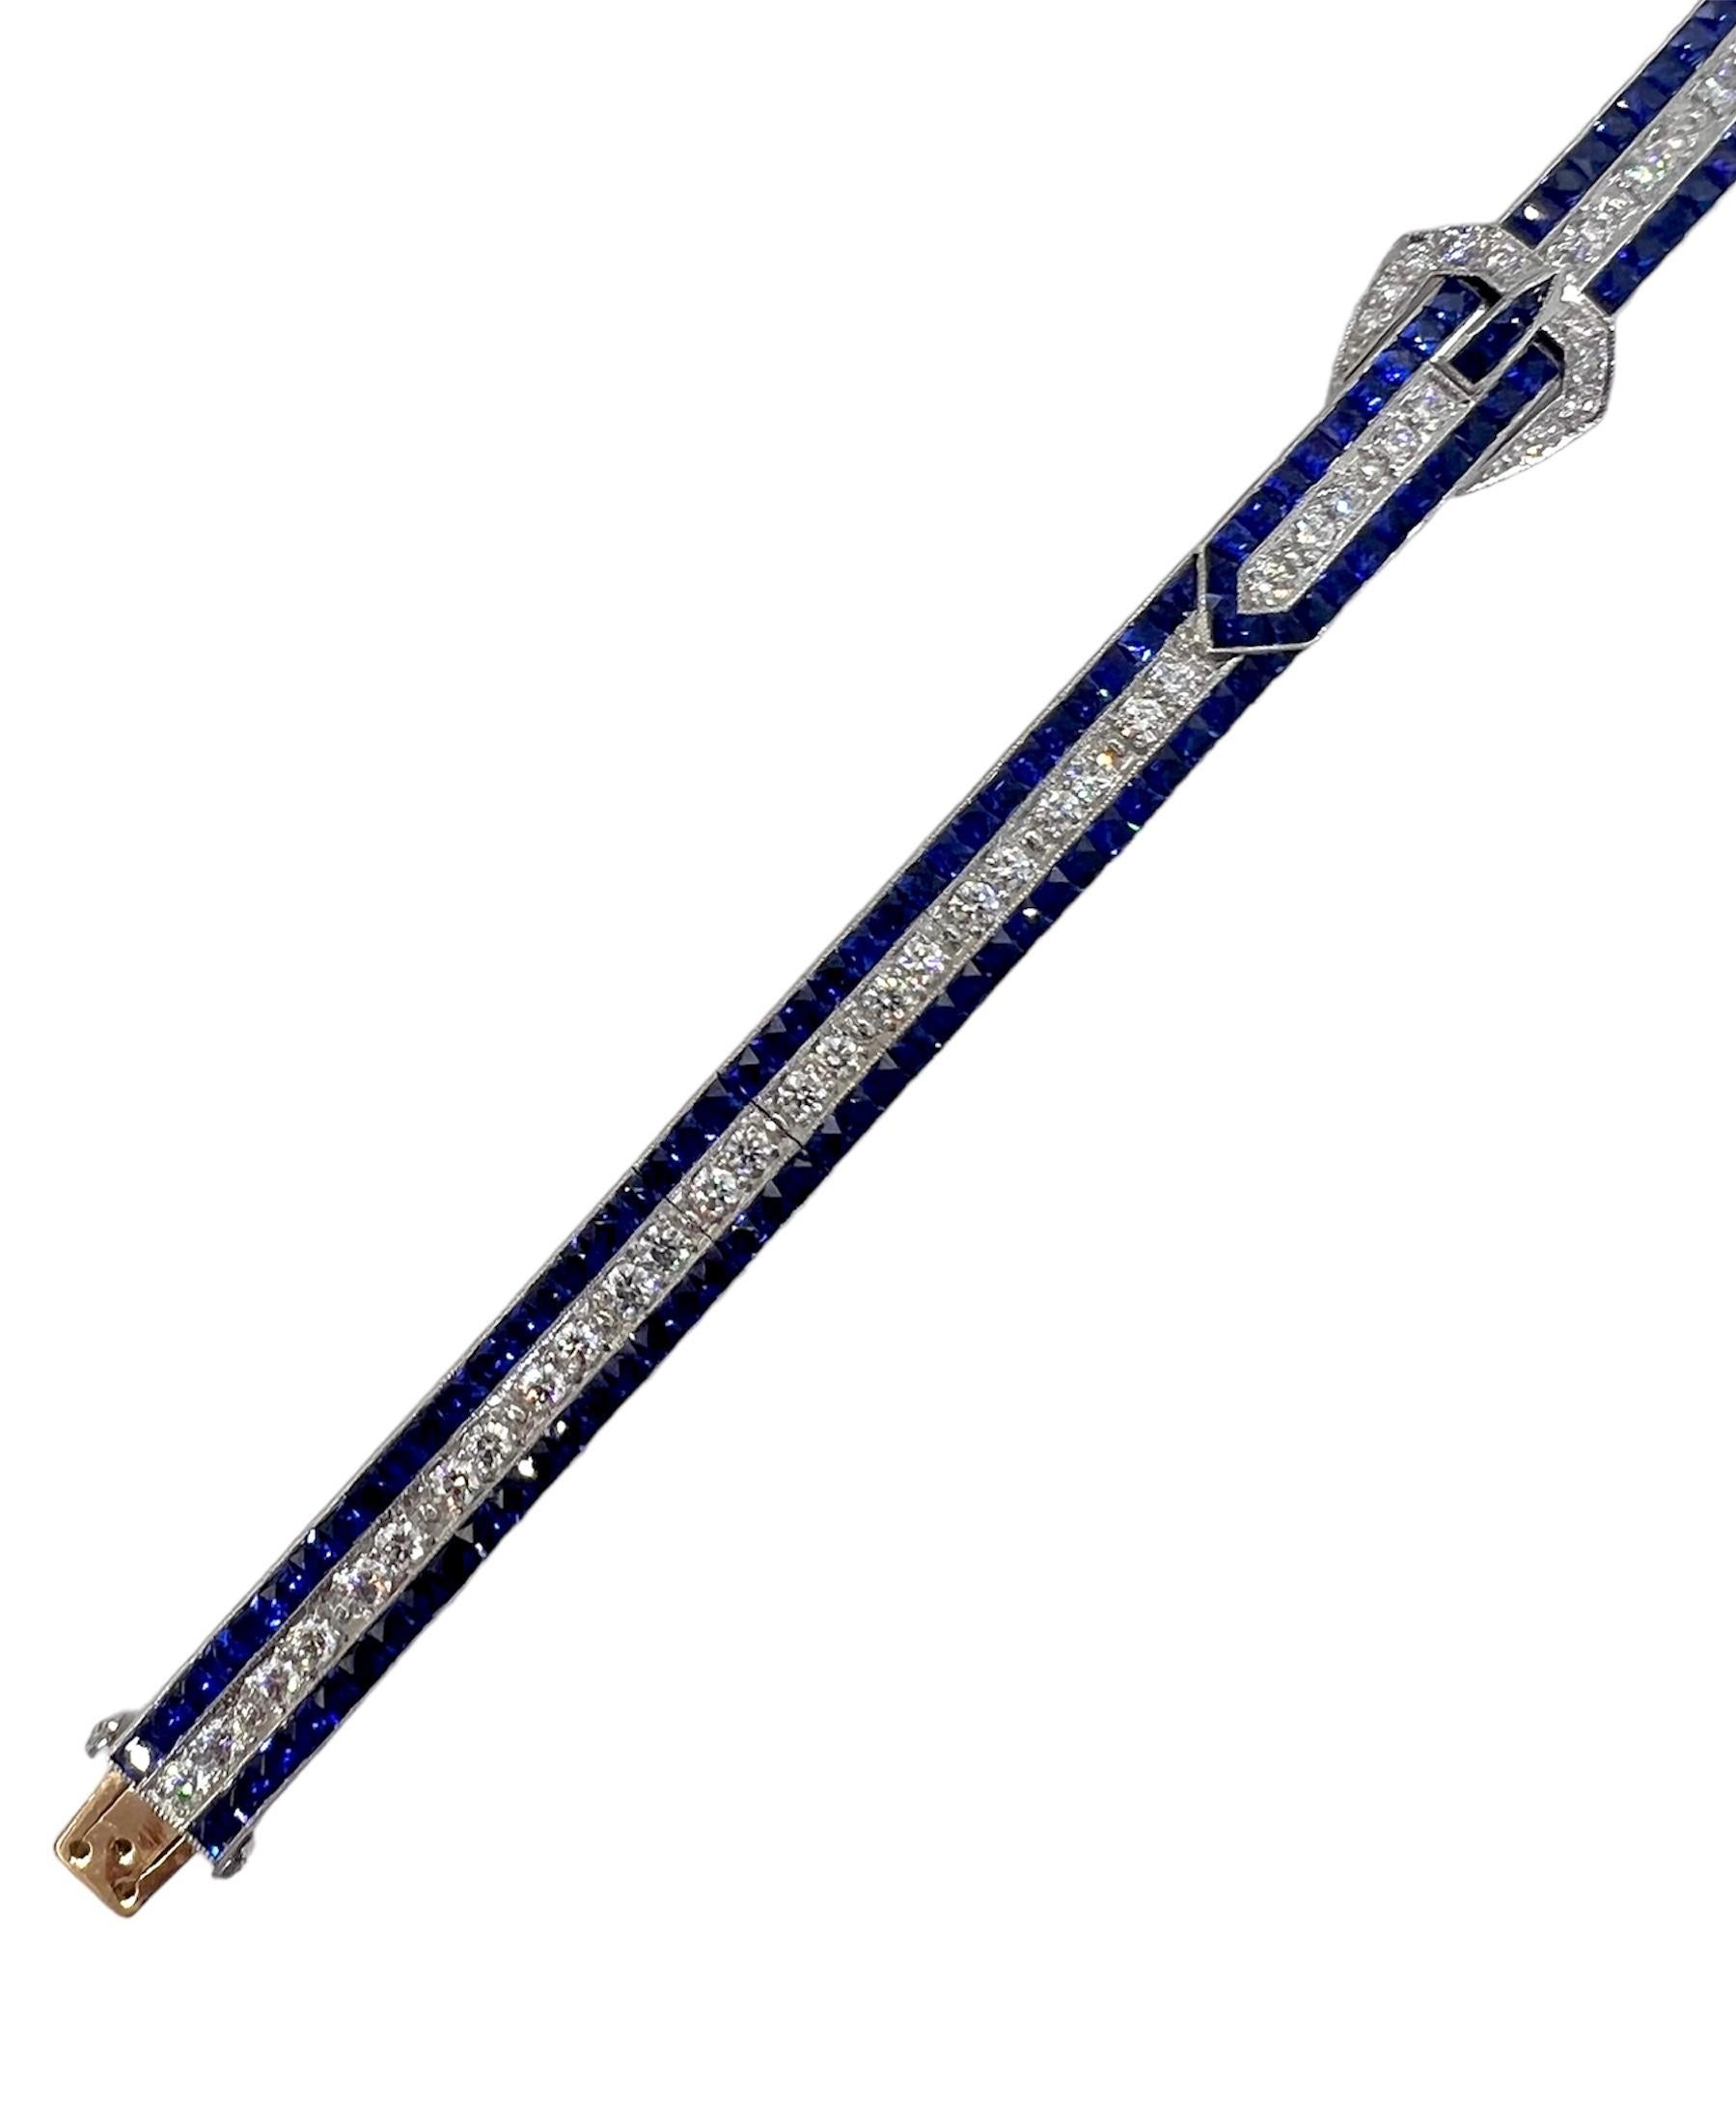 Sophia D. Platinarmband mit blauem Saphir von 15,60 Karat und Diamant von 2,65 Karat.

Sophia D von Joseph Dardashti LTD ist seit 35 Jahren weltweit bekannt und lässt sich vom klassischen Art-Déco-Design inspirieren, das mit modernen